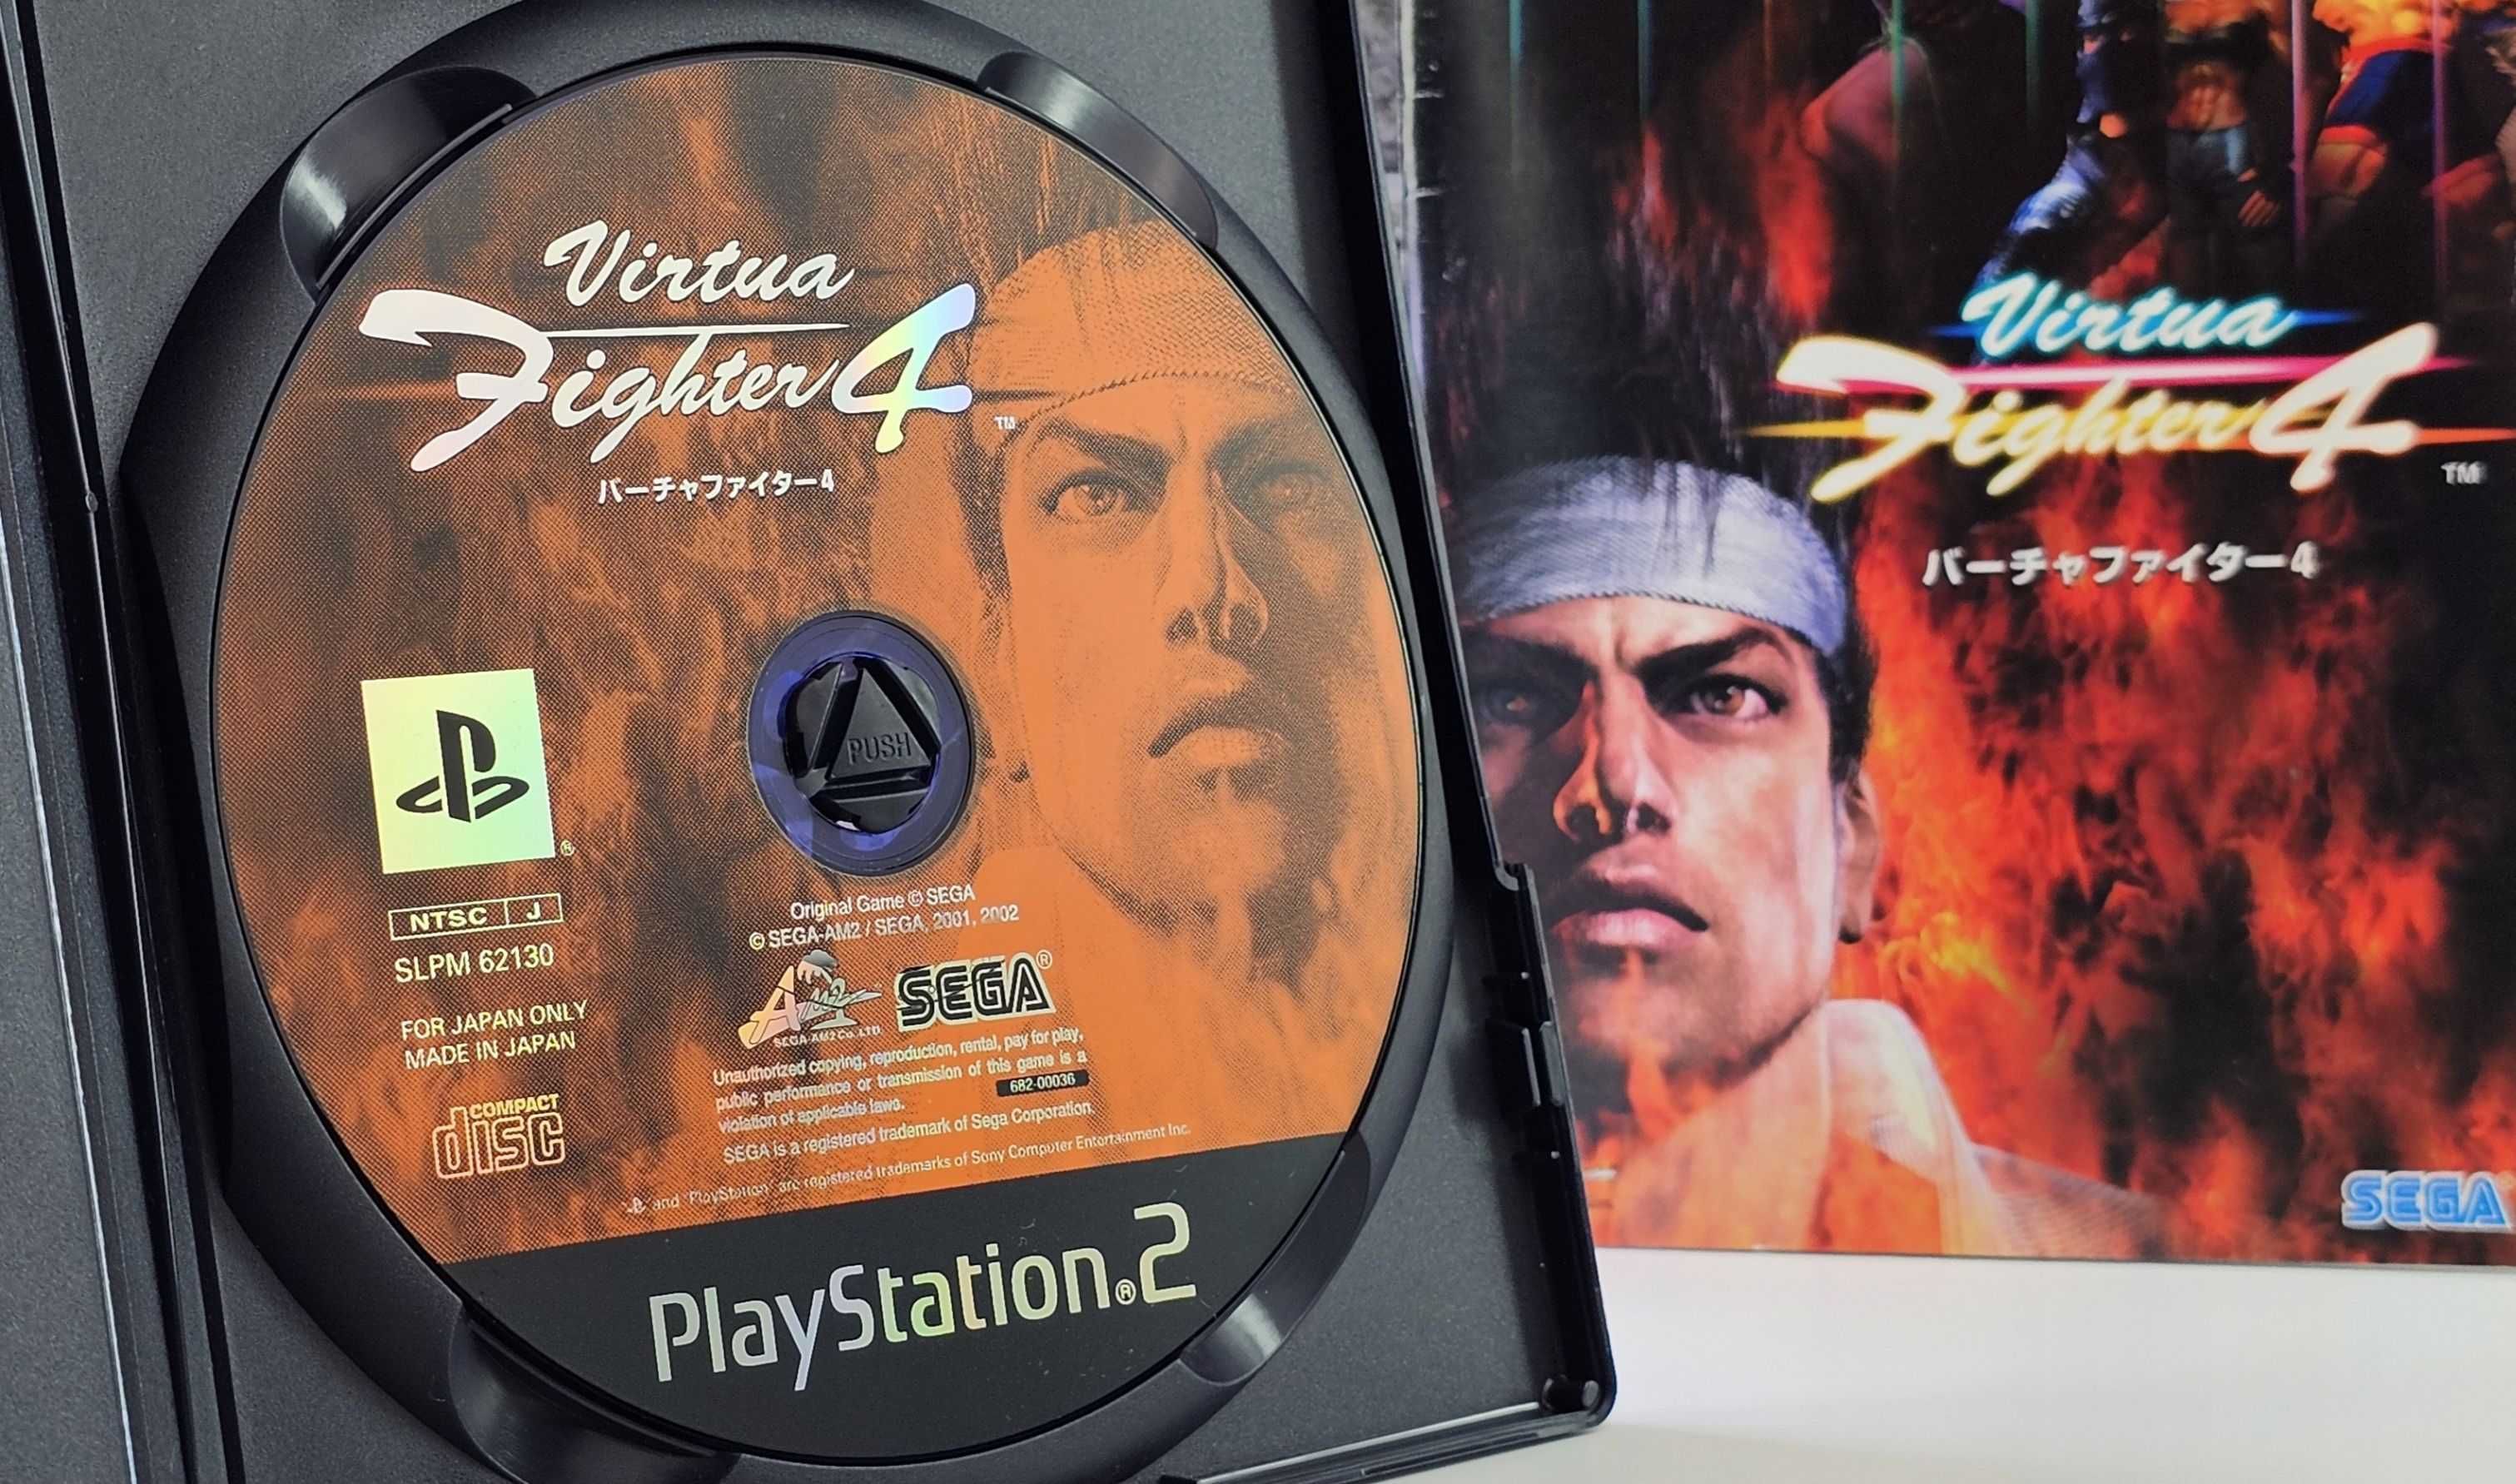 Playstation 2 Virtua Fighter 4